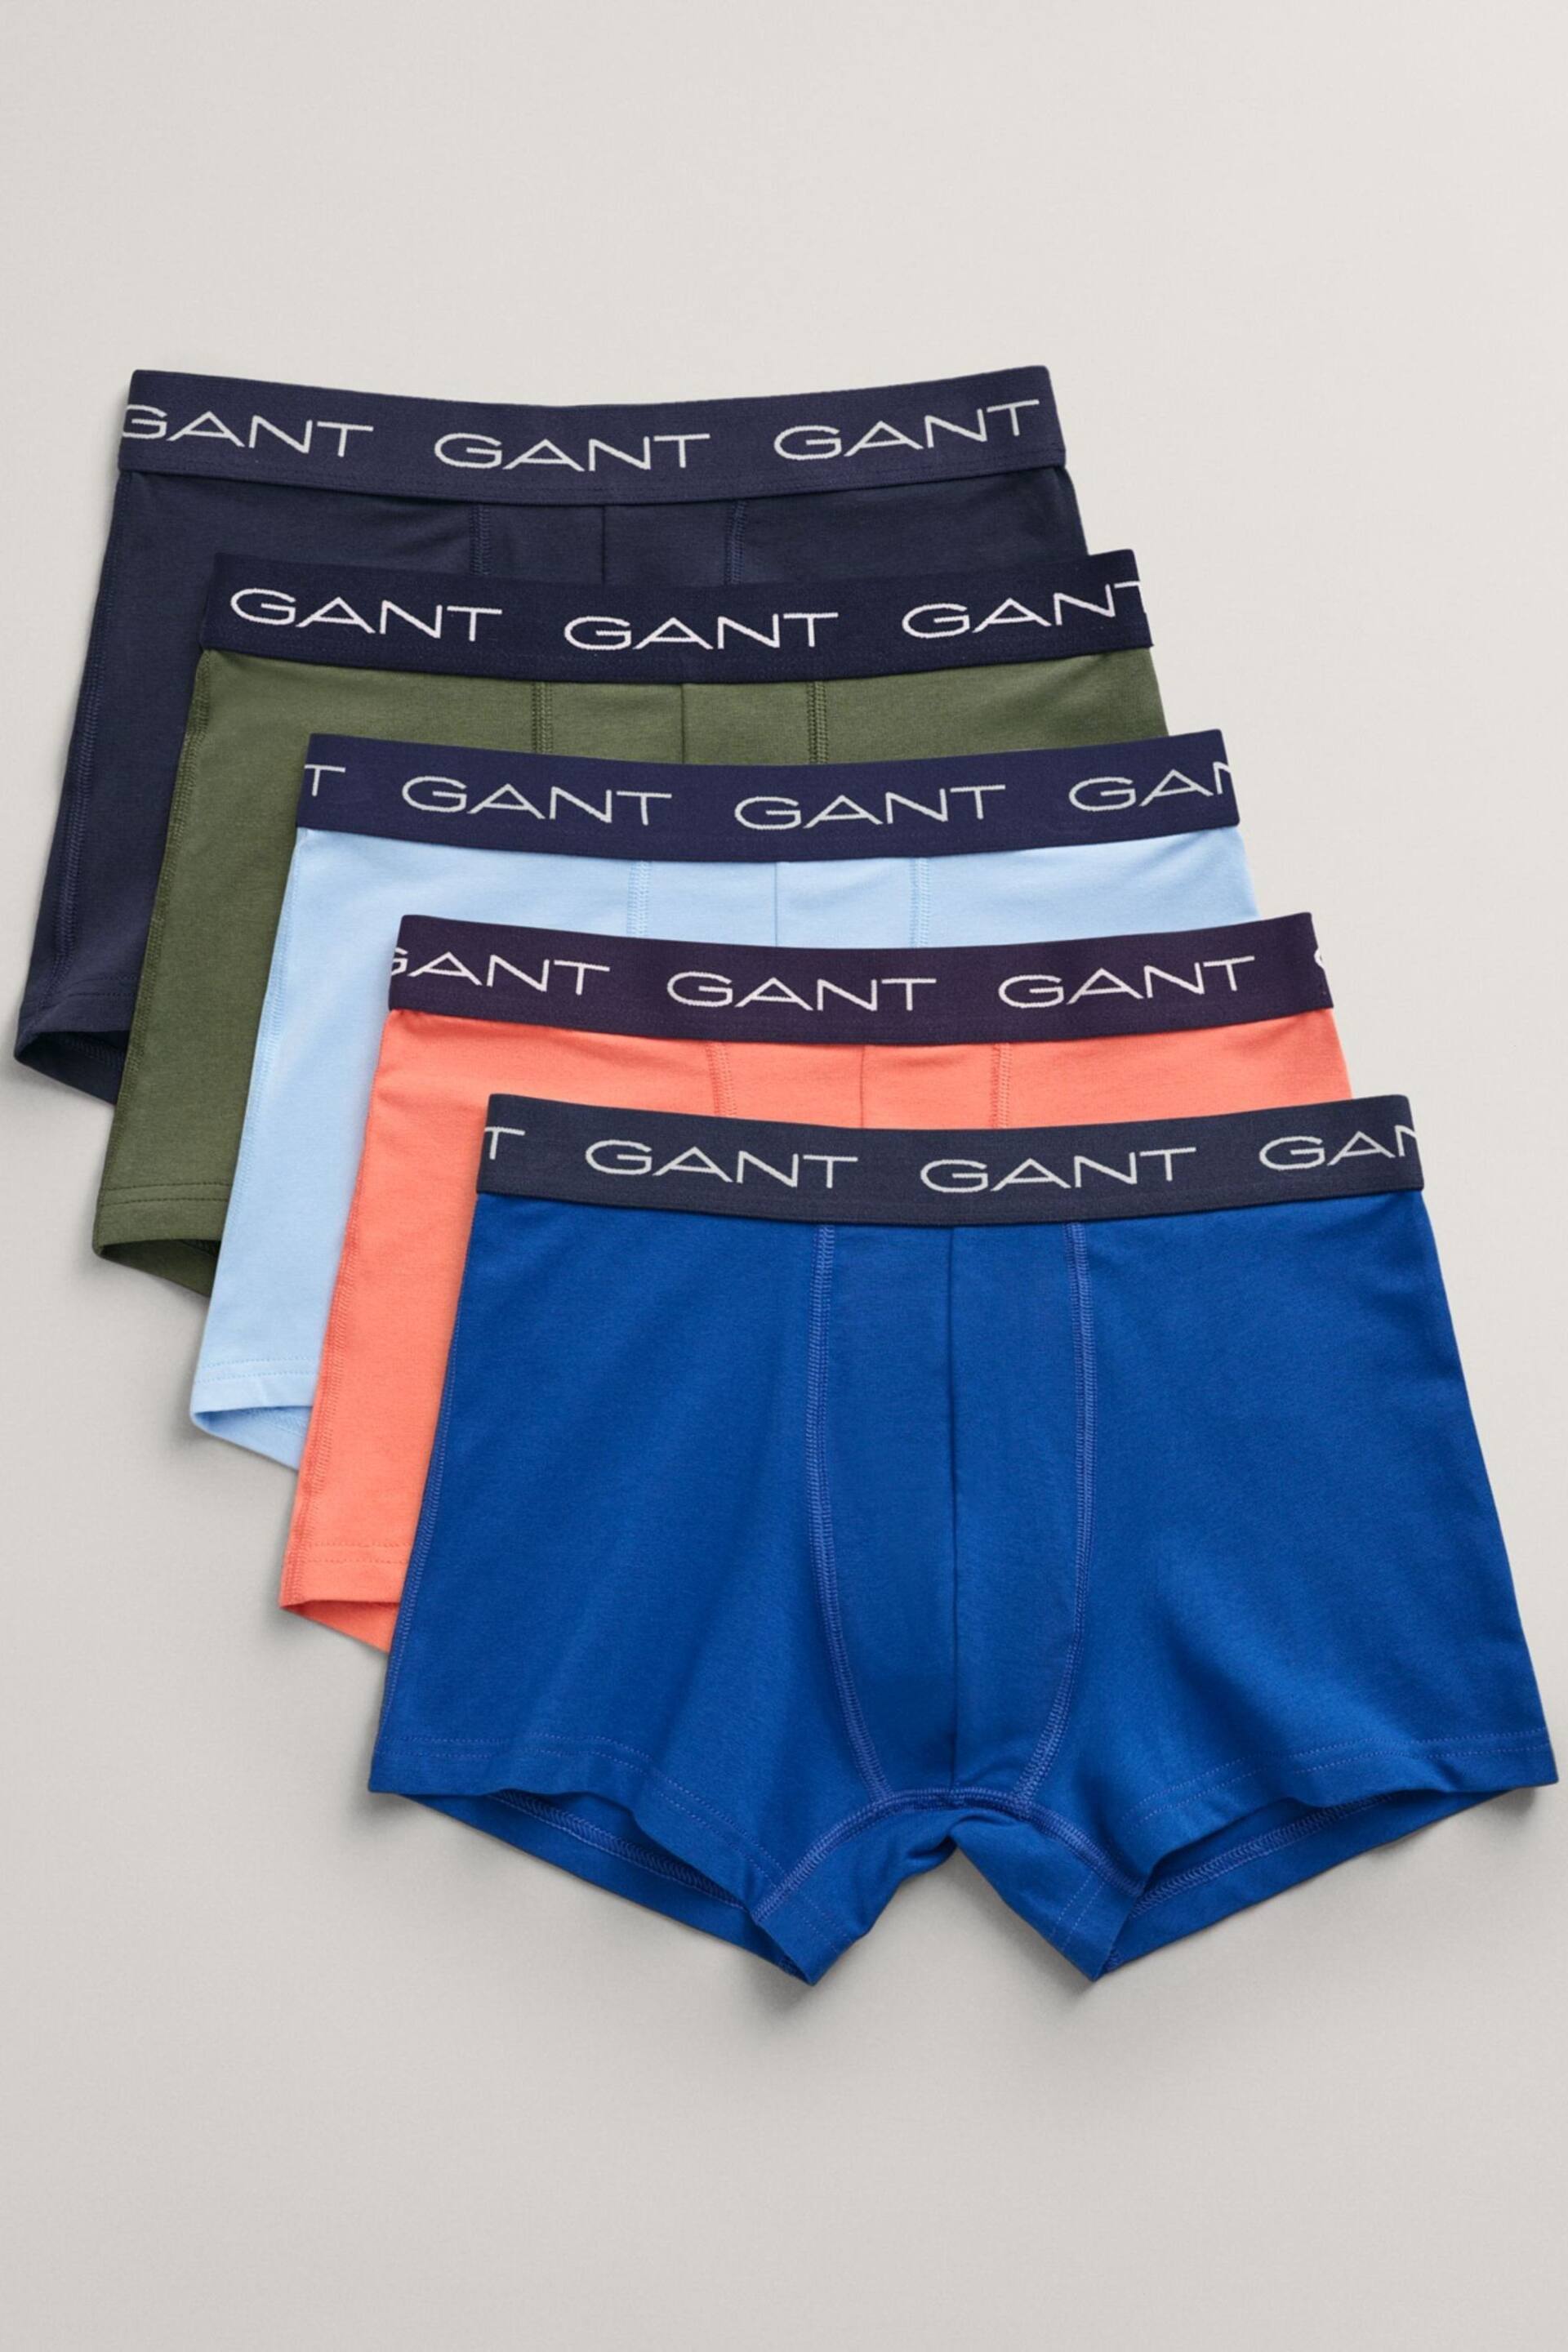 GANT Blue Trunks 5 Pack - Image 2 of 10